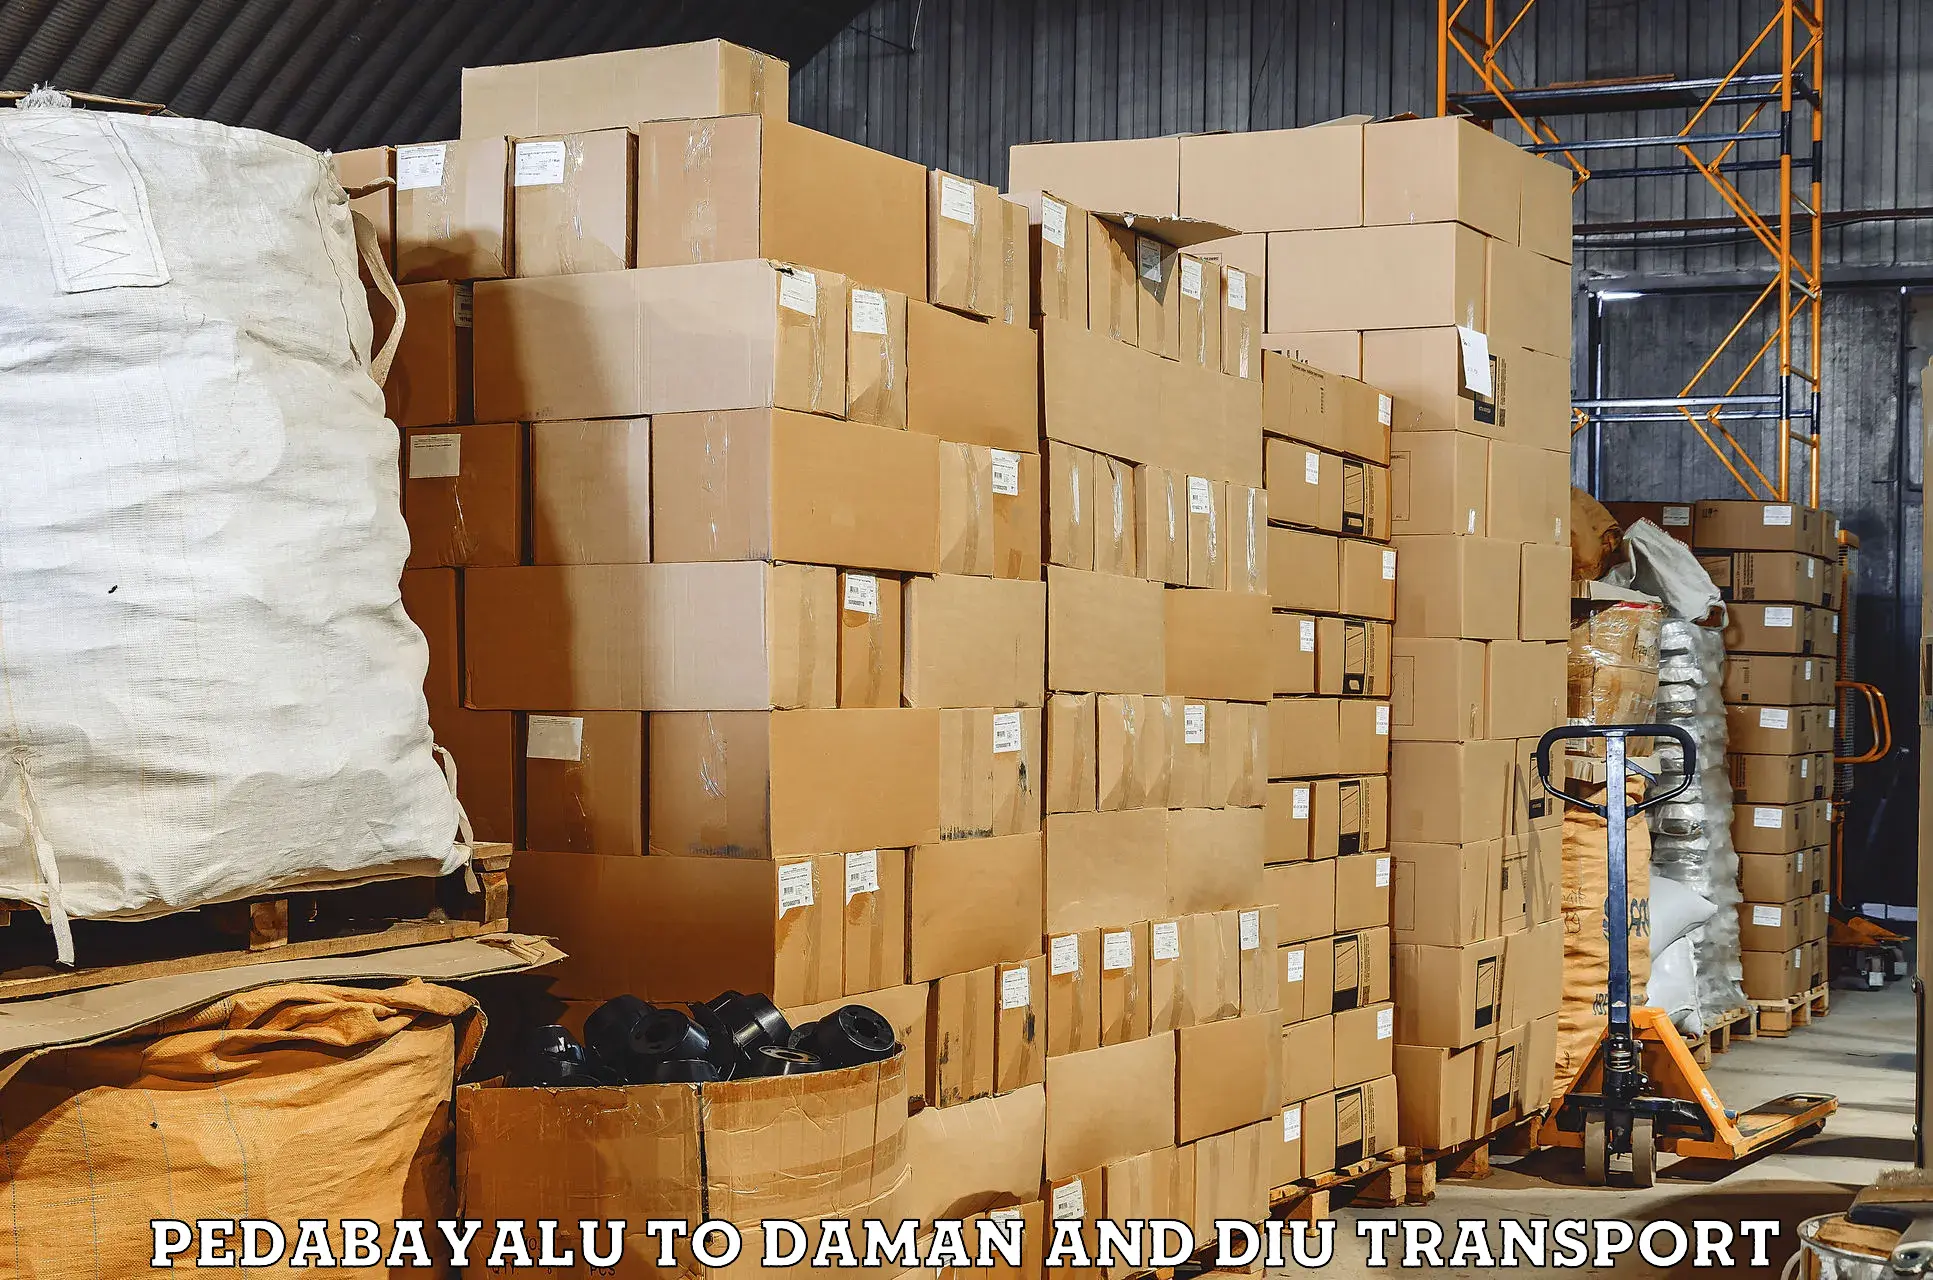 Land transport services Pedabayalu to Daman and Diu